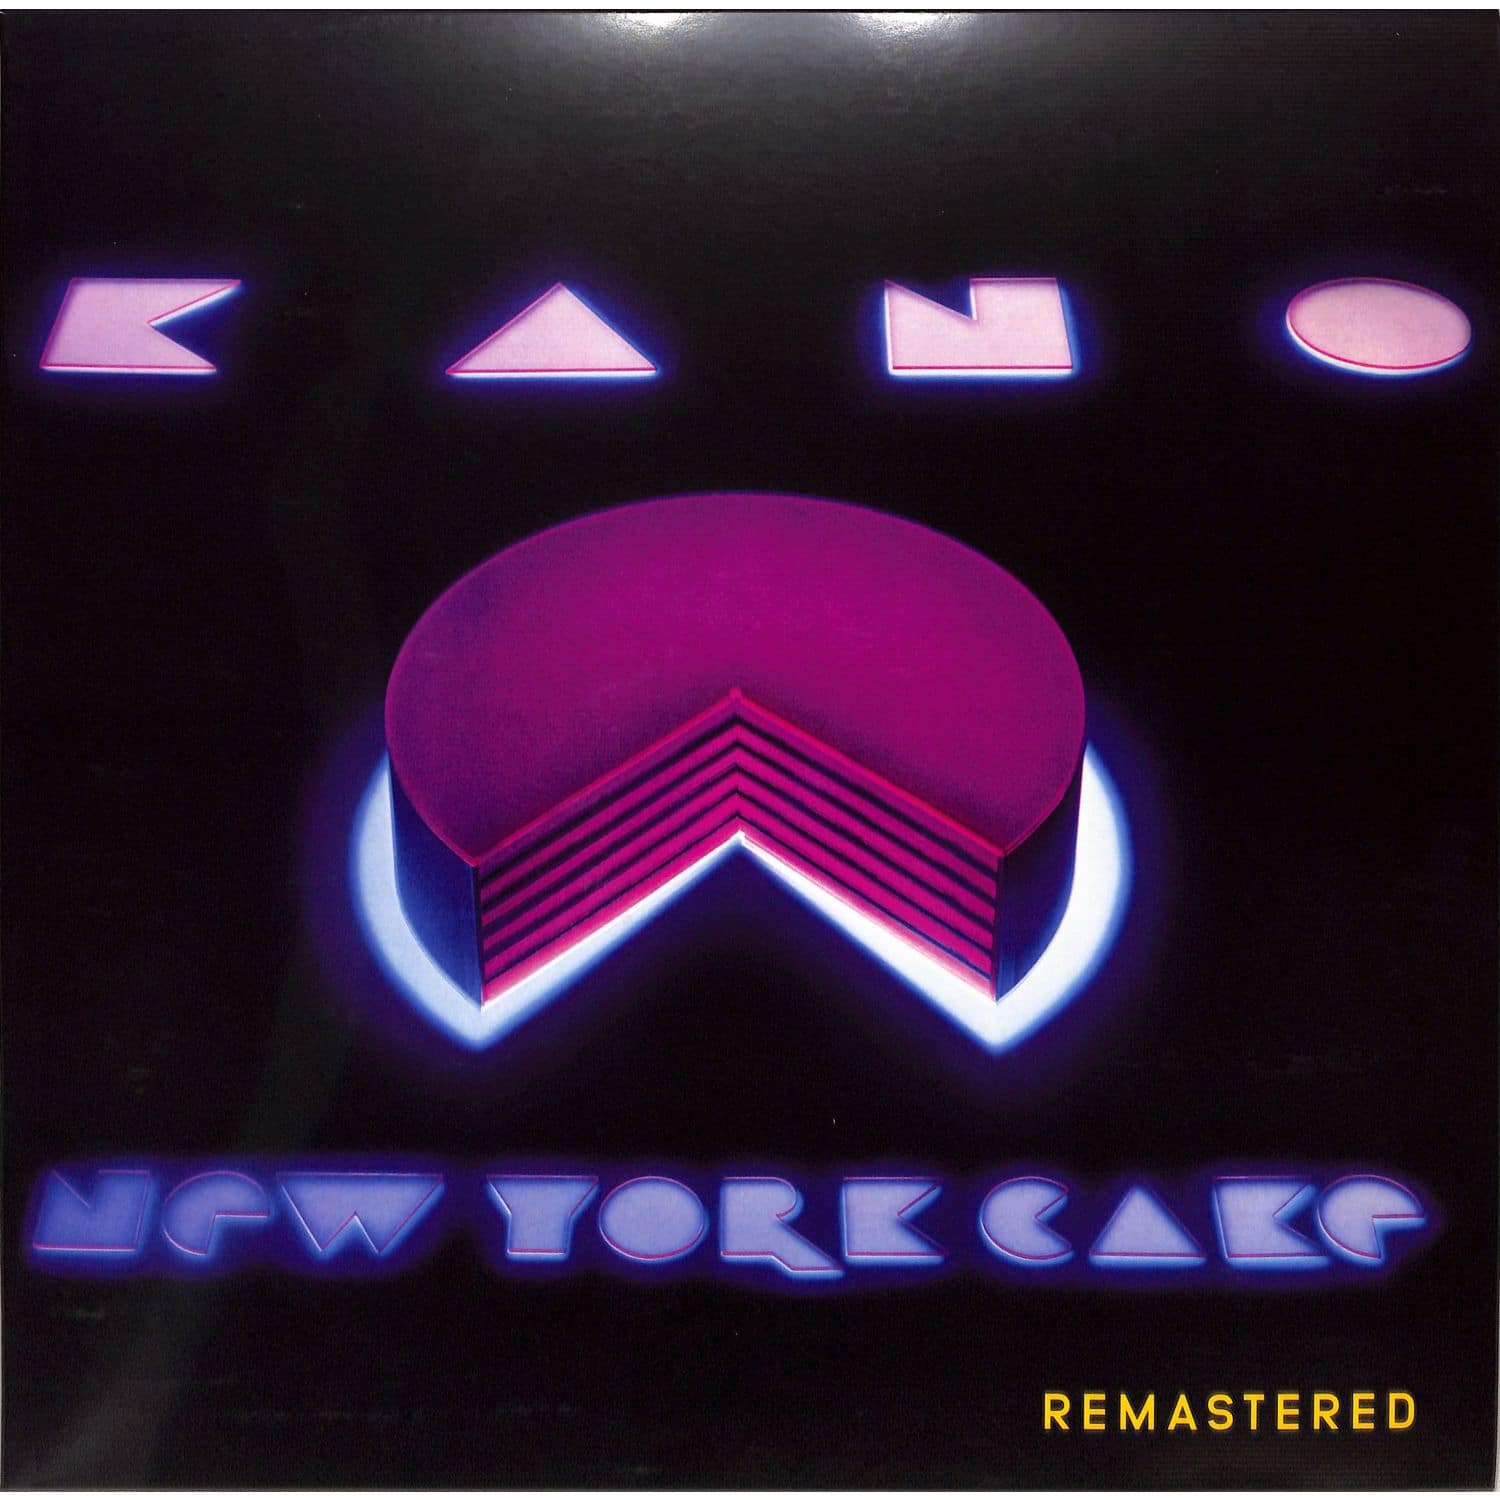 Kano - NEW YORK CAKE 